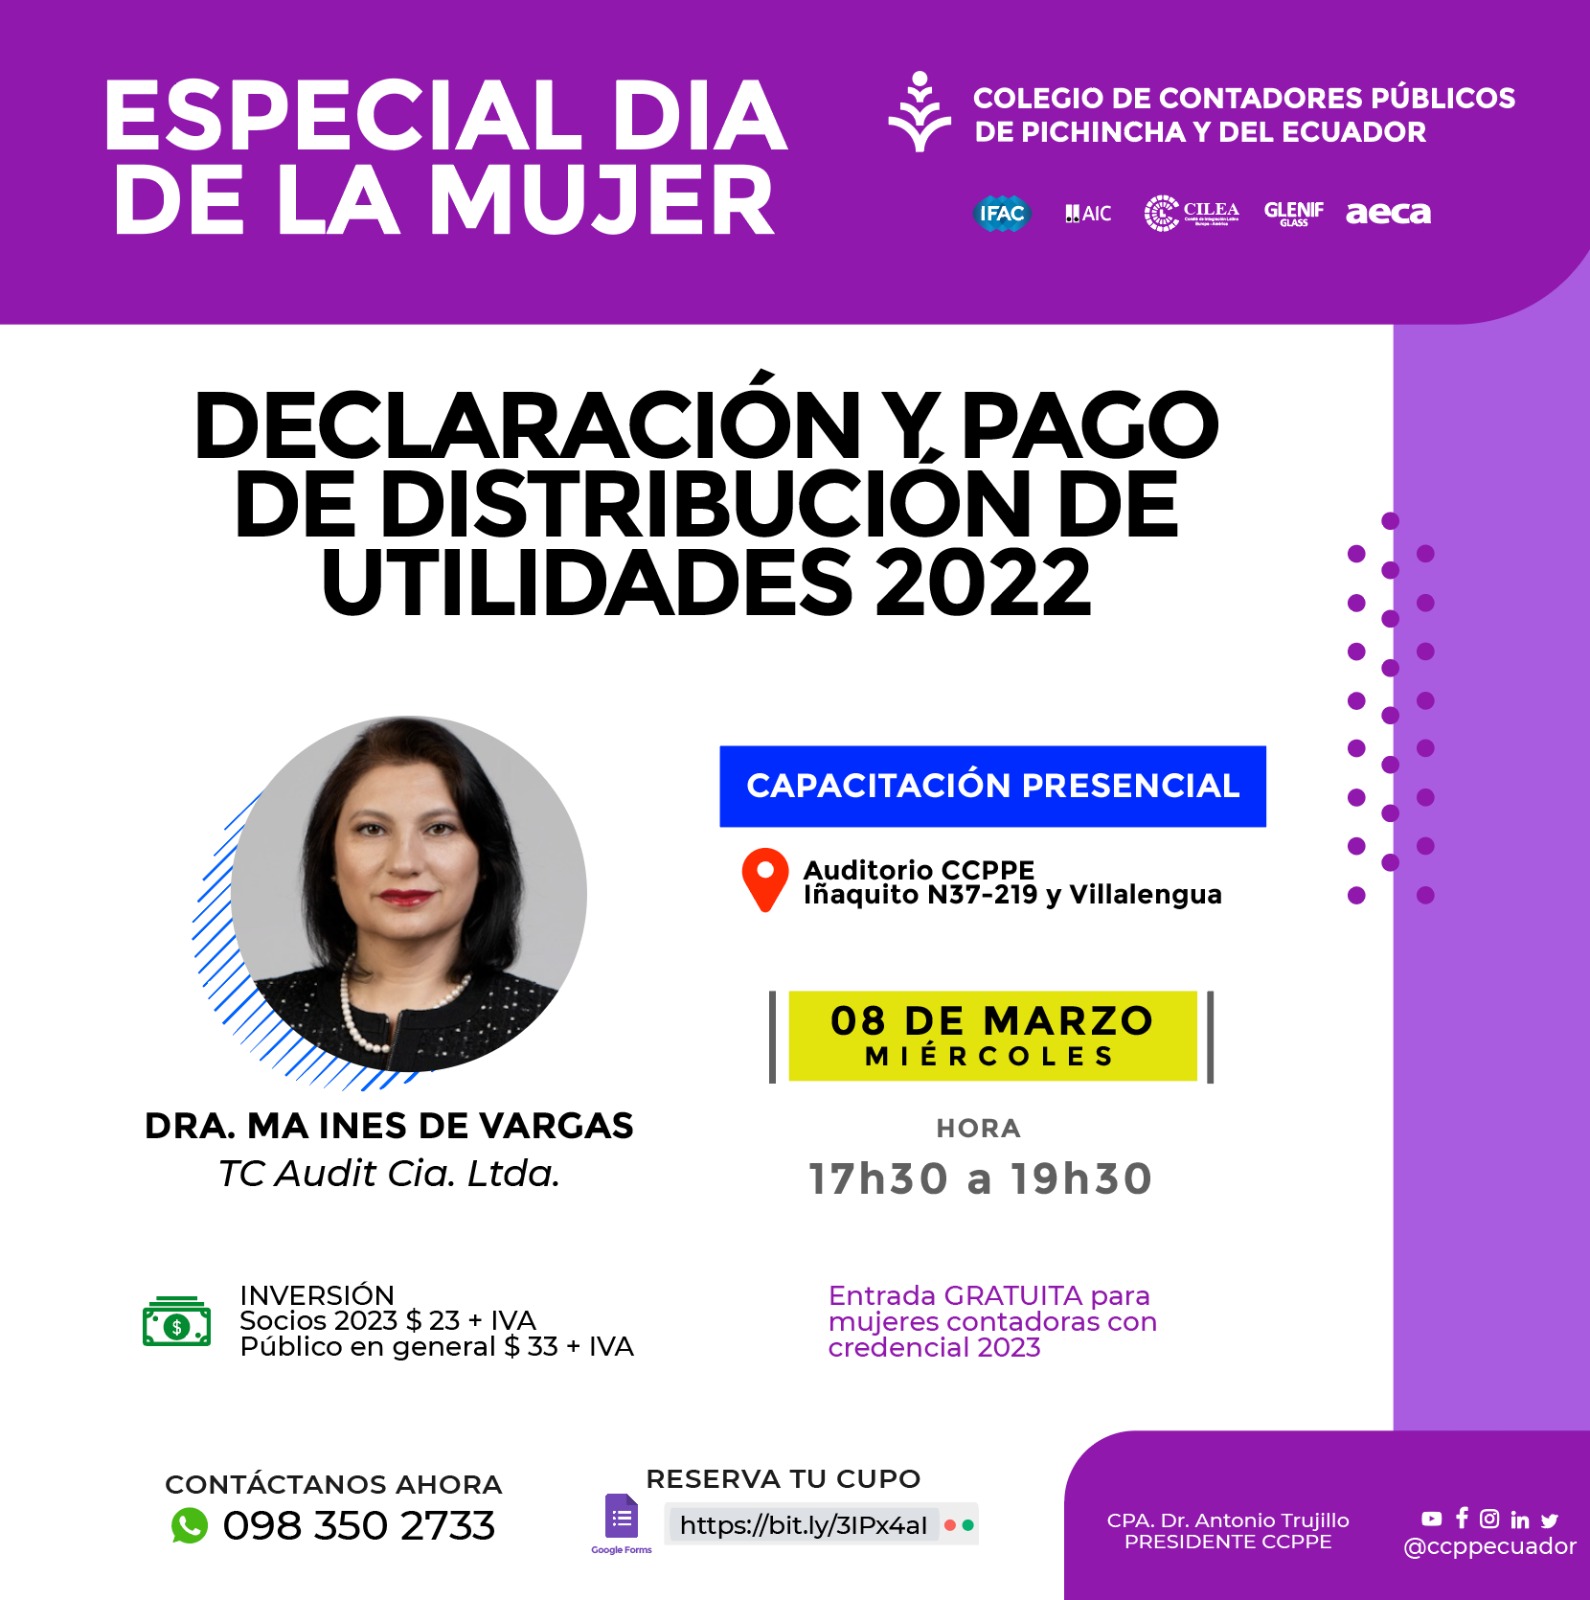 DECLARACION Y PAGO DE DISTRIBUCION DE UTILIDADES - 08 MARZO 2023